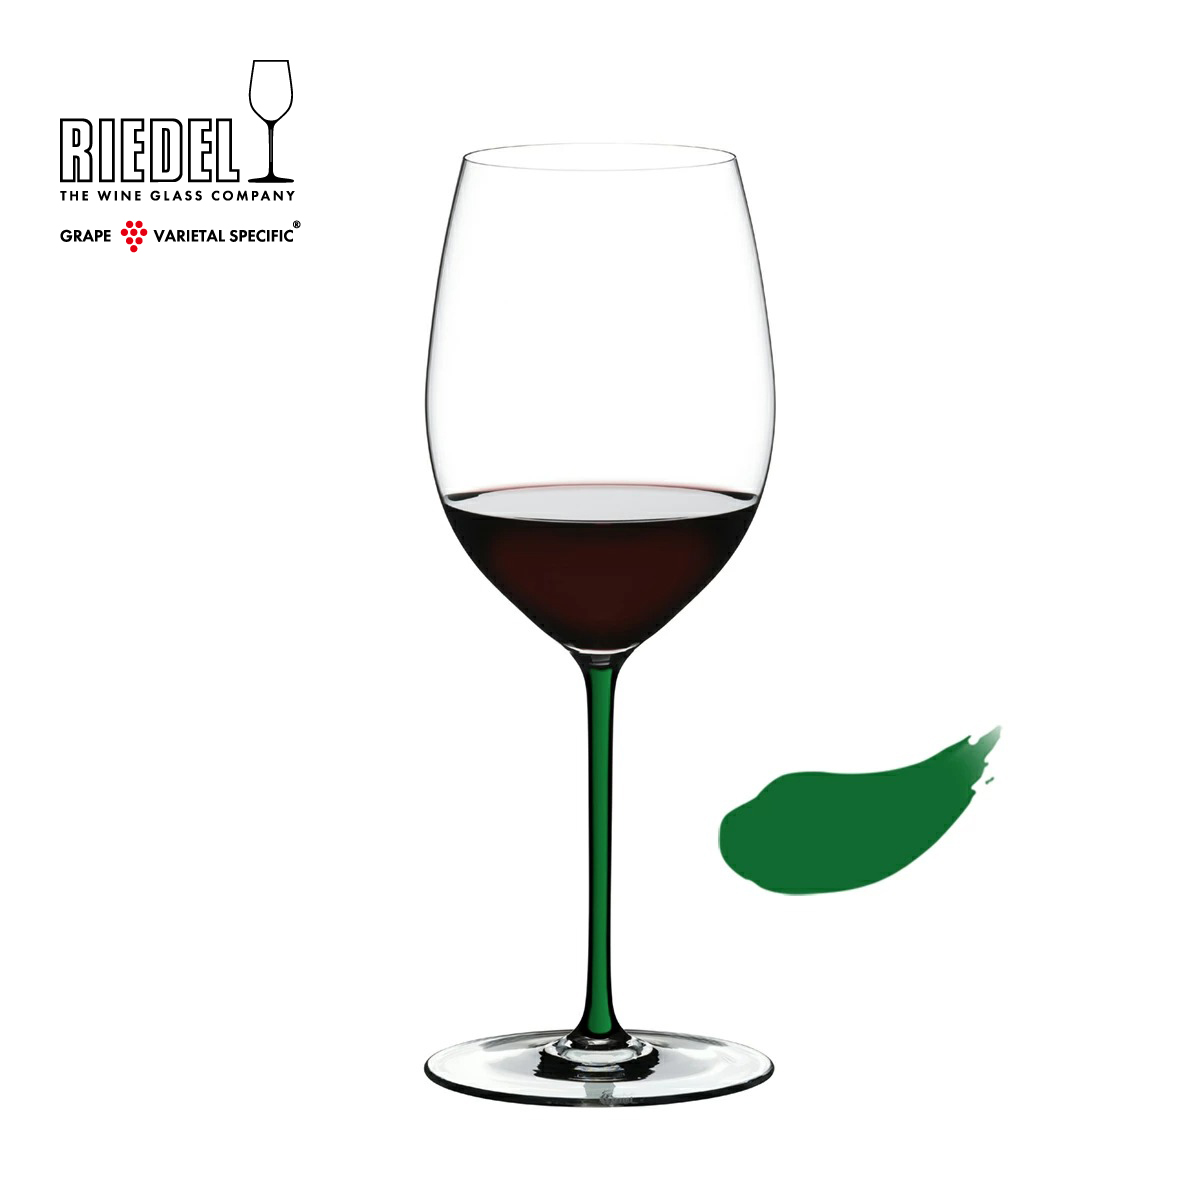 緑色のステム 日本 最安値 脚 の赤ワイン用グラス リーデル公式 ファット ア マーノ カベルネ ラッピング無料 メルロ 1個入 グリーン RIEDEL 0G 4900